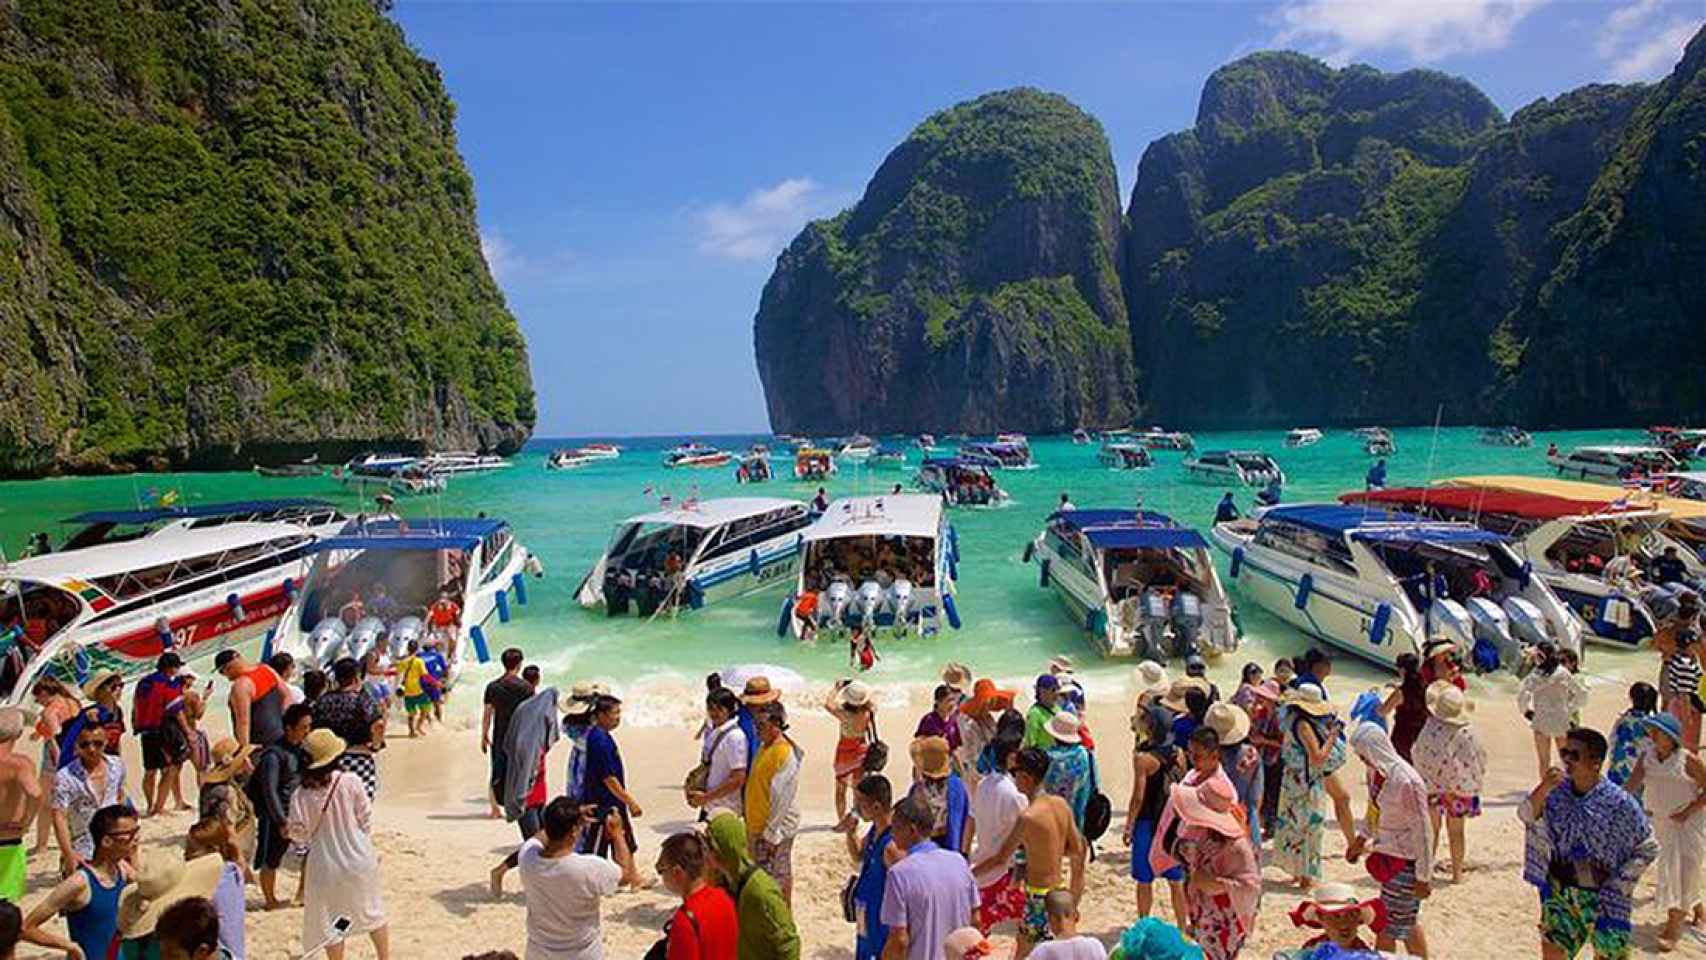 Una de las imágenes reales de Maya Bay, recibiendo cuatro mil turistas diarios.